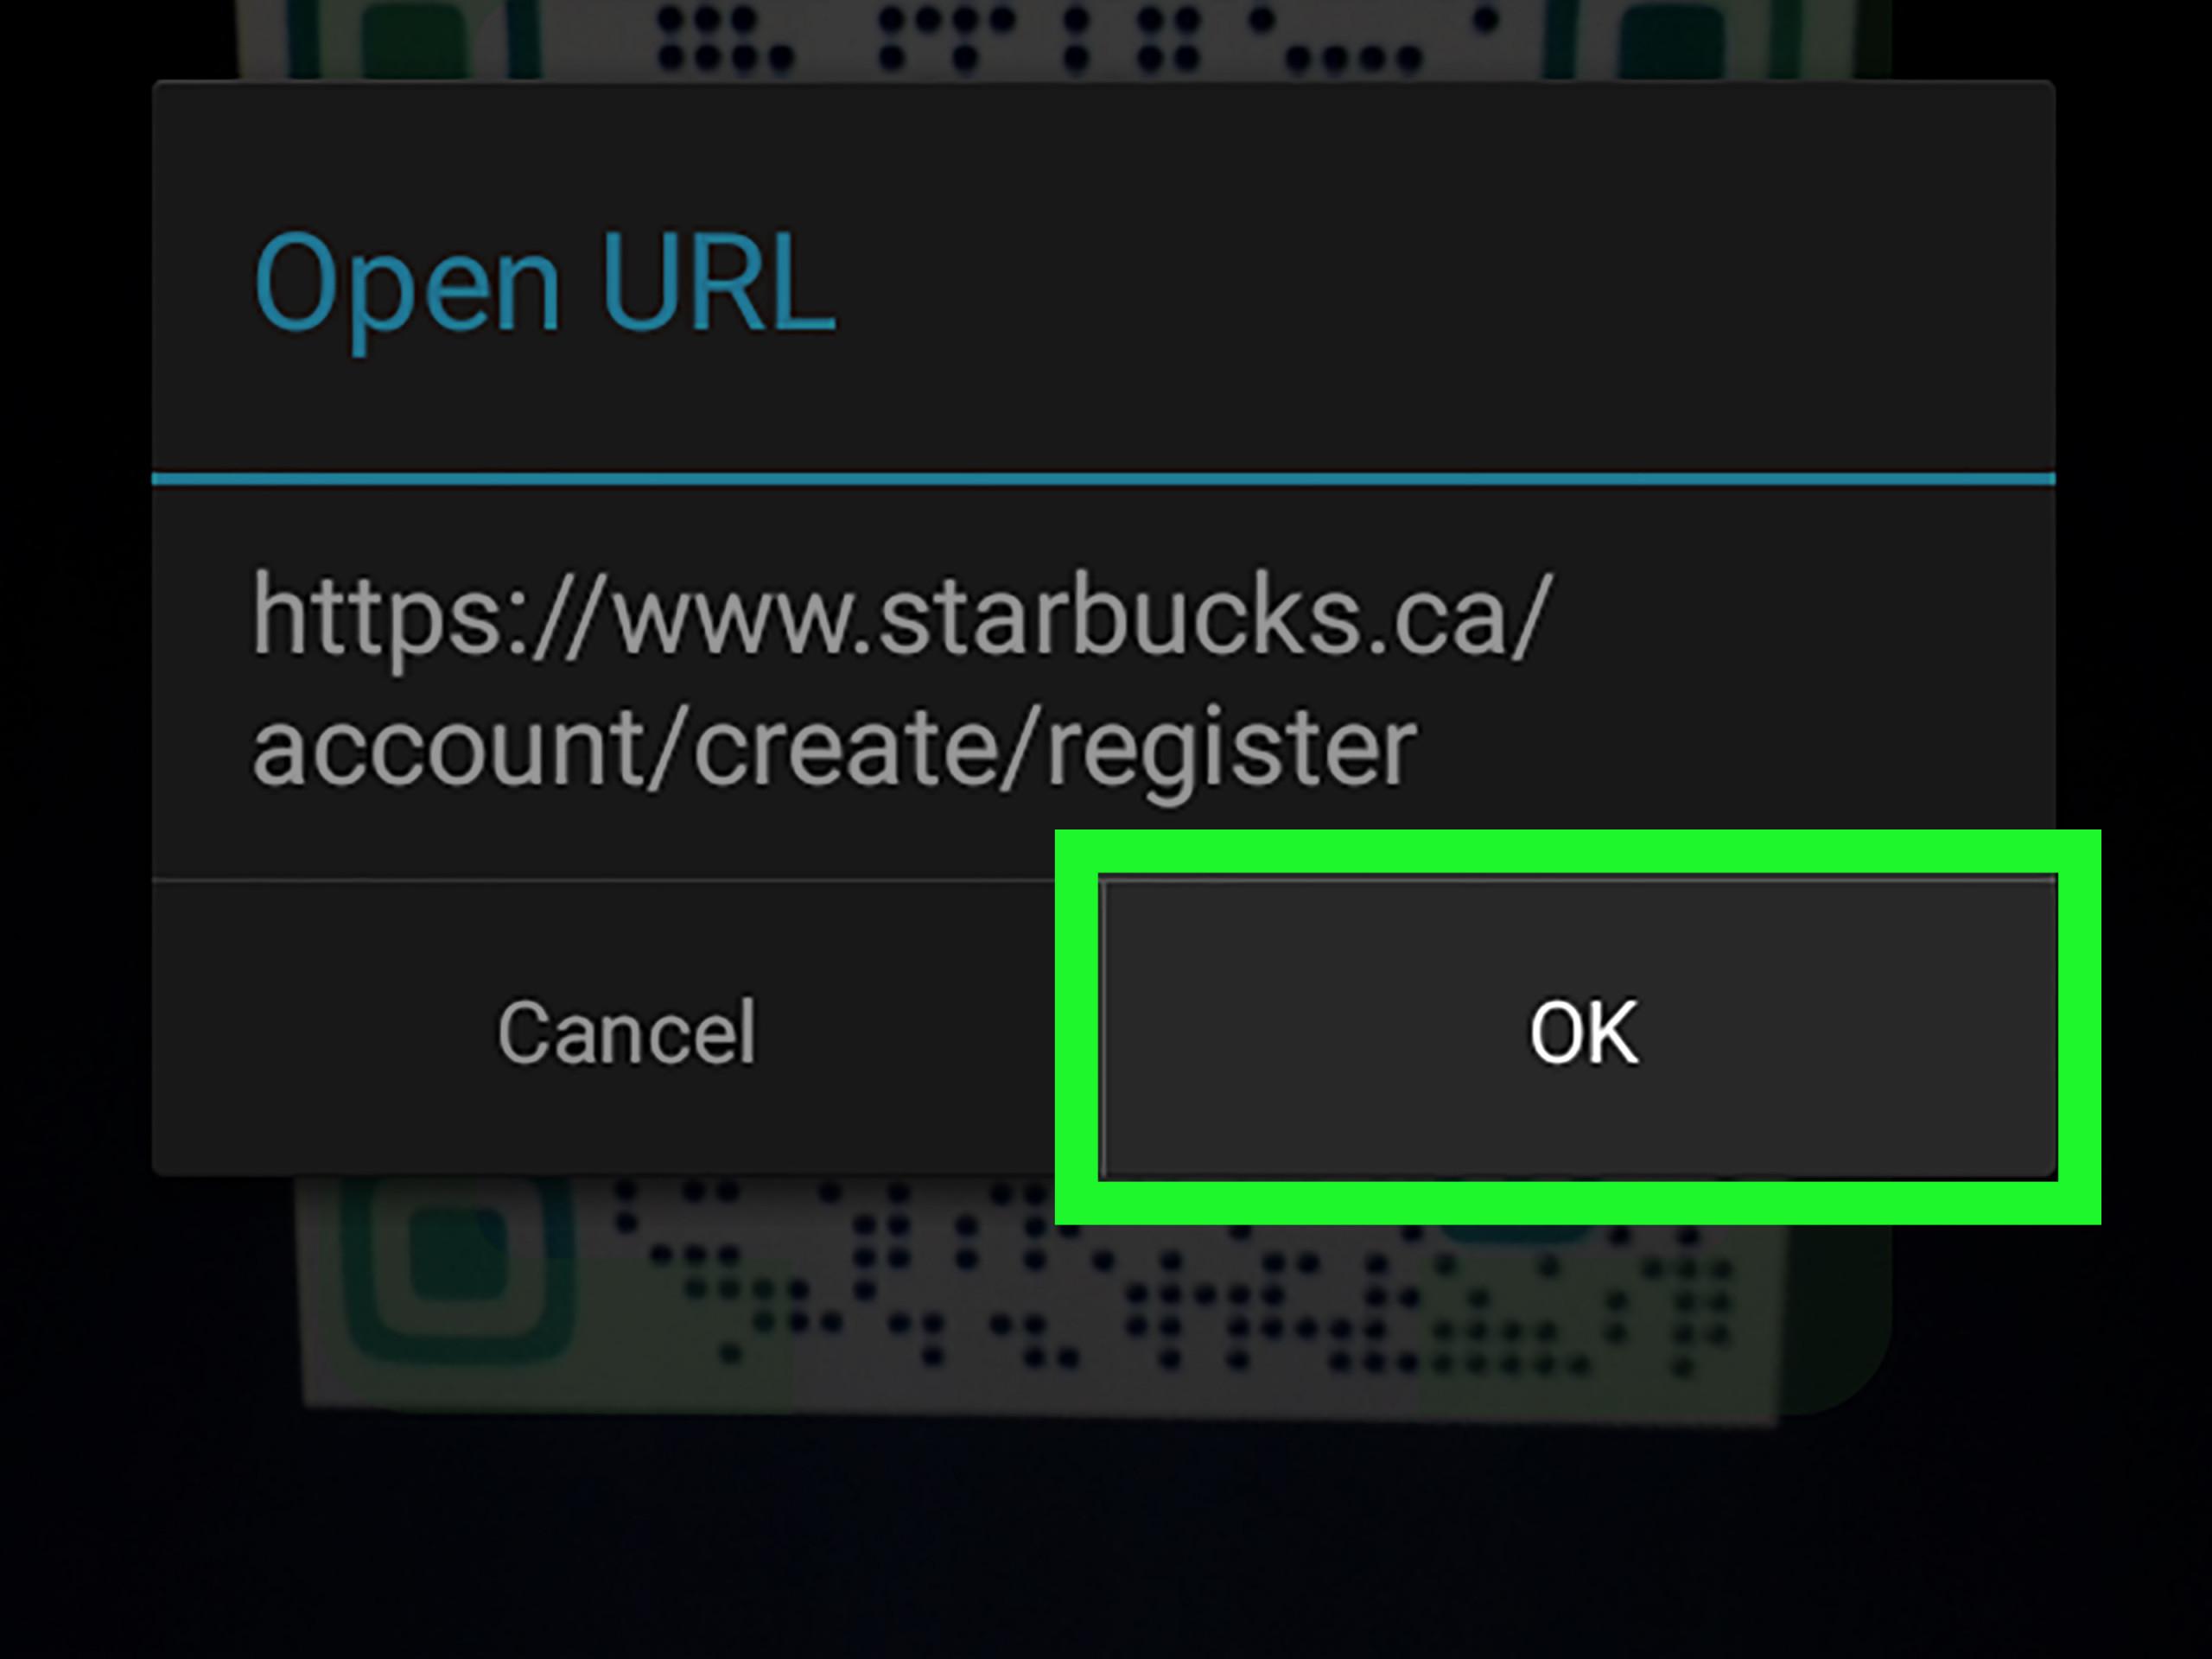 Просмотреть кьюар код онлайн через камеру своего смартфона на Android и iOS